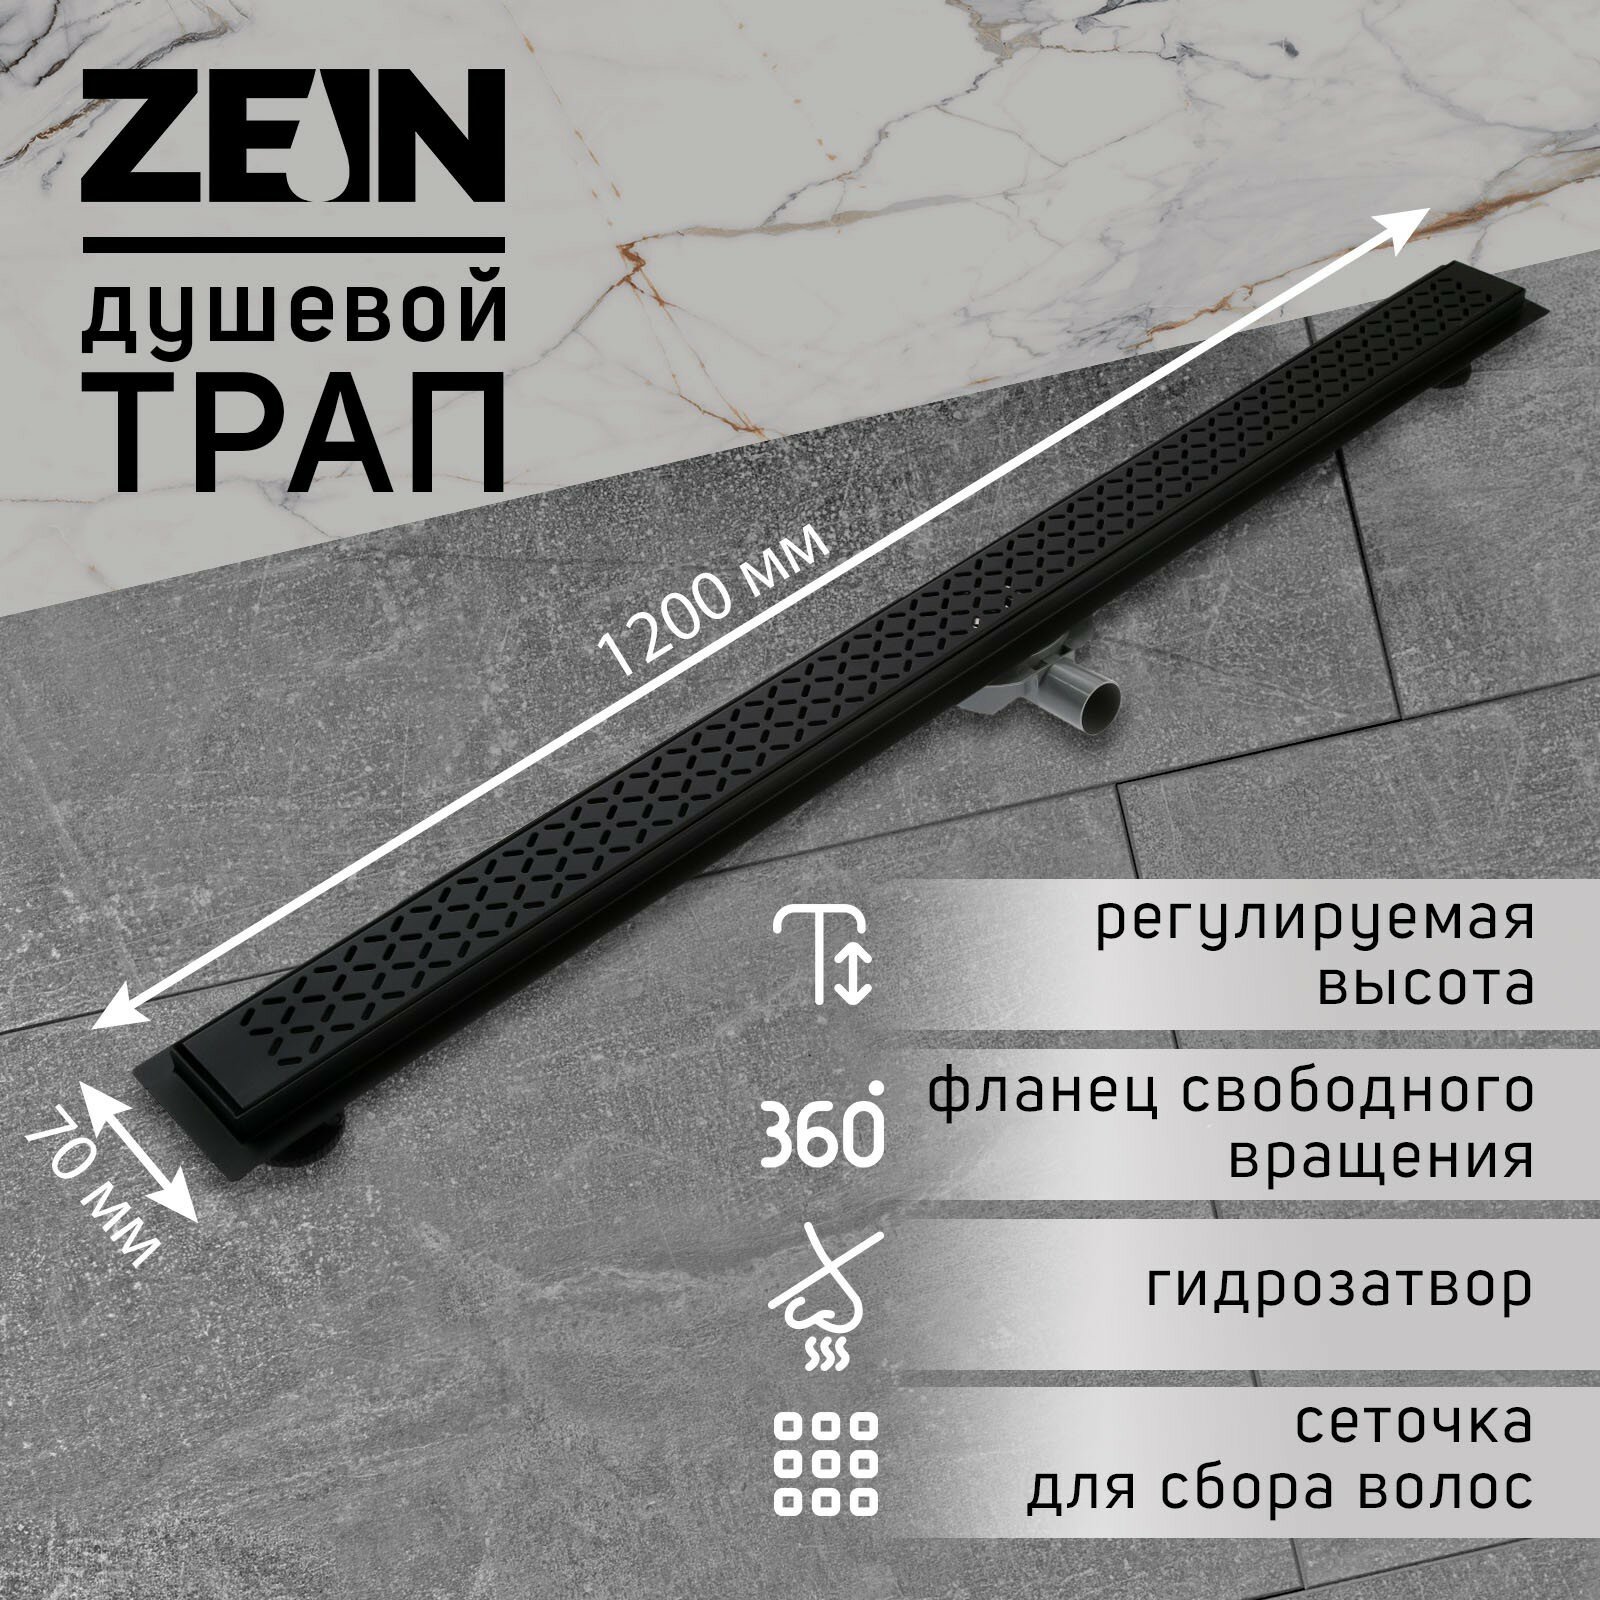 Трап ZEIN, c флaнцeм свободного вращения 360°, 7х120 см, d=40/50 мм, нерж. сталь, черный